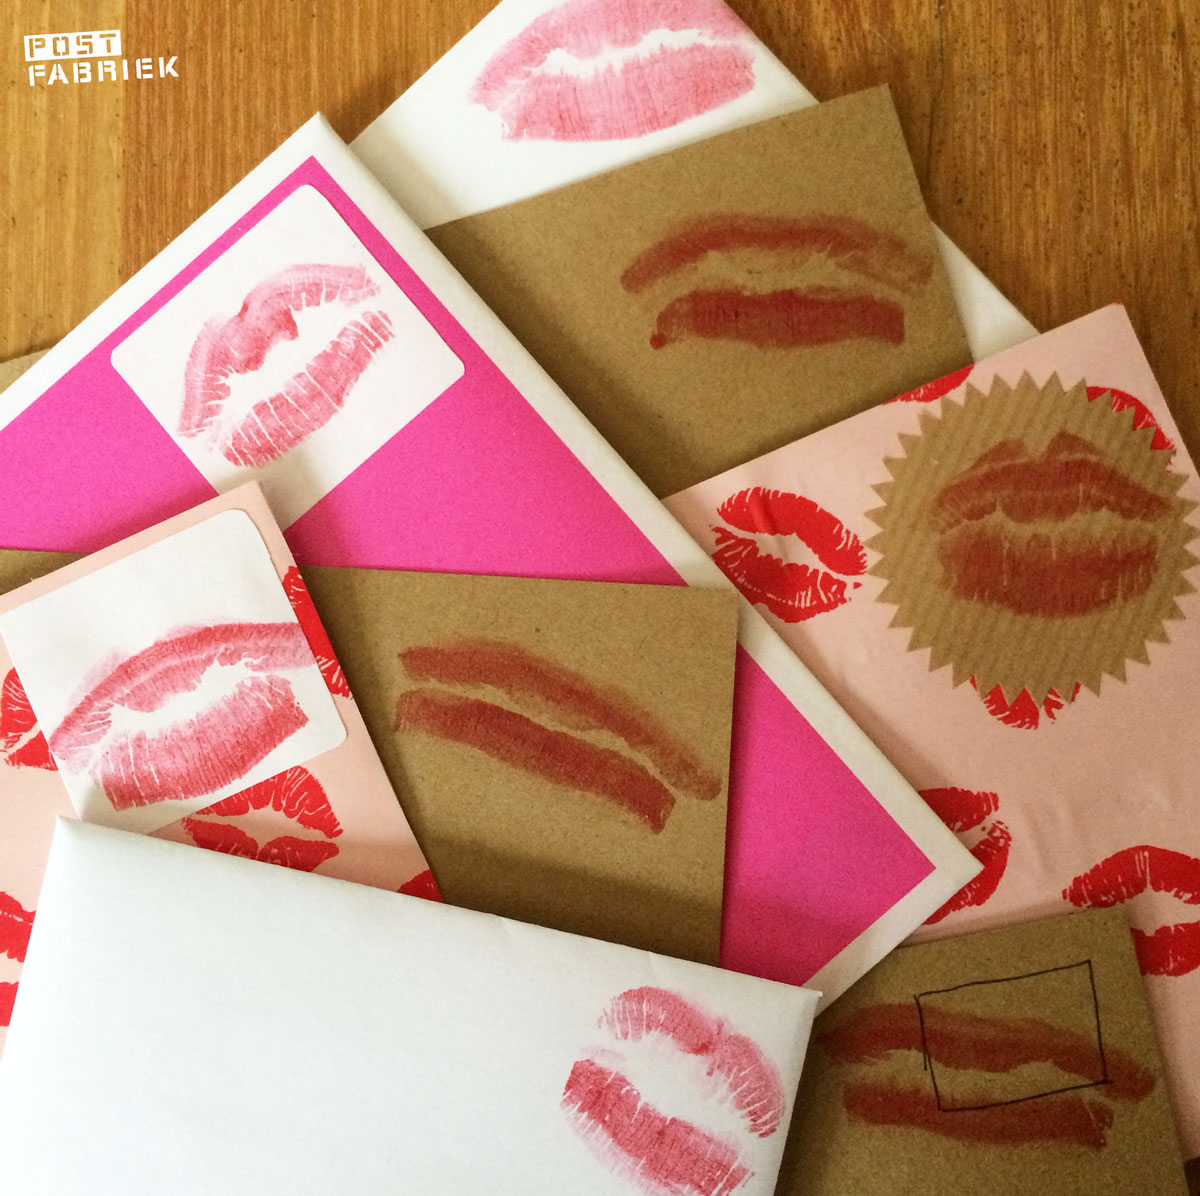 Kims stapel met gekuste kaarten voor Valentijnsdag